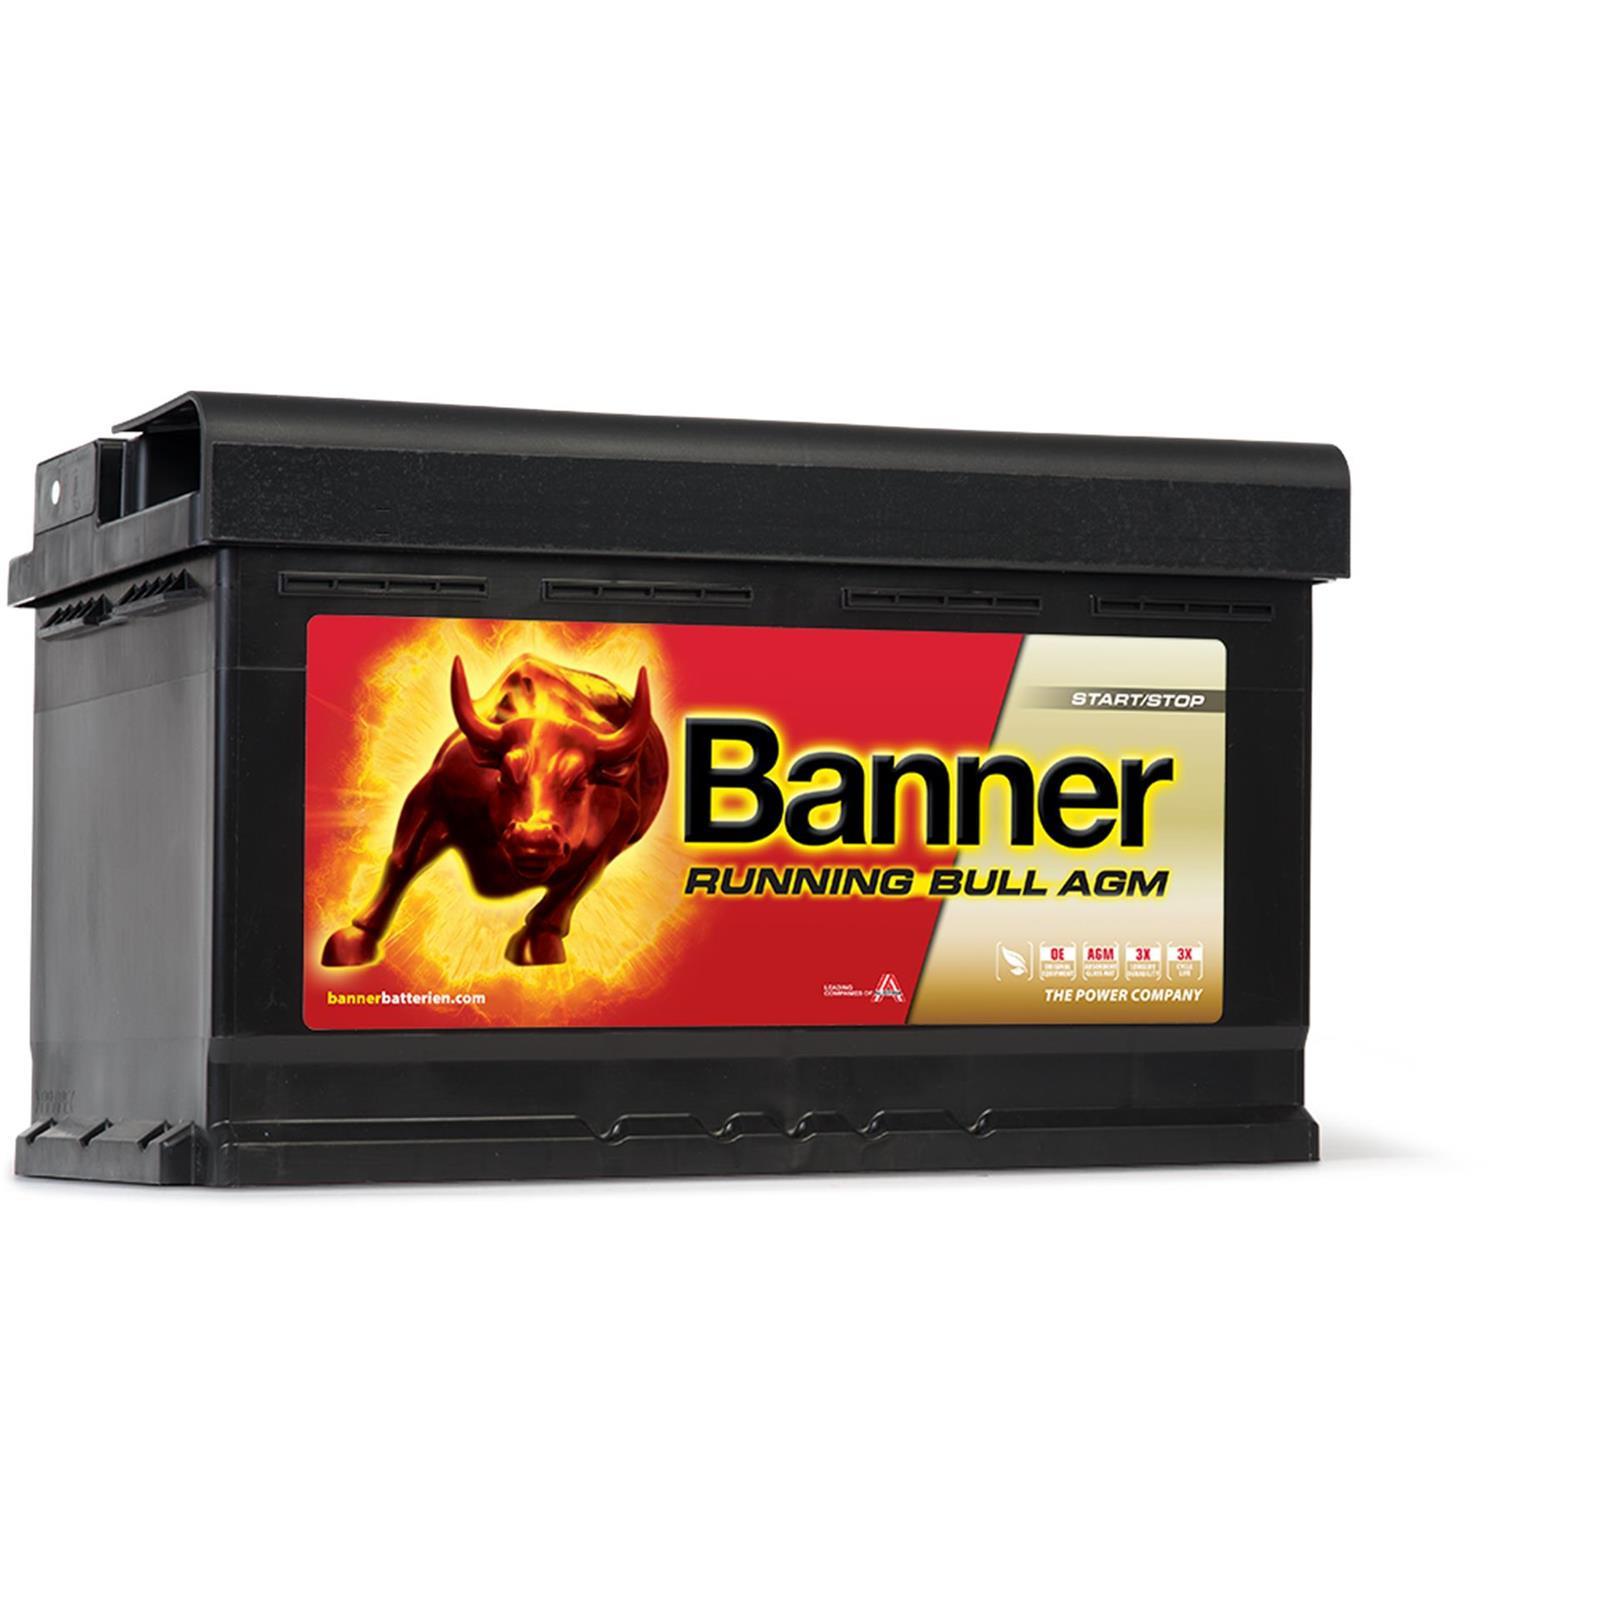 Autobatterie BANNER Running Bull AGM 12V 80AH 58001 Start Stop 1er  61217555718